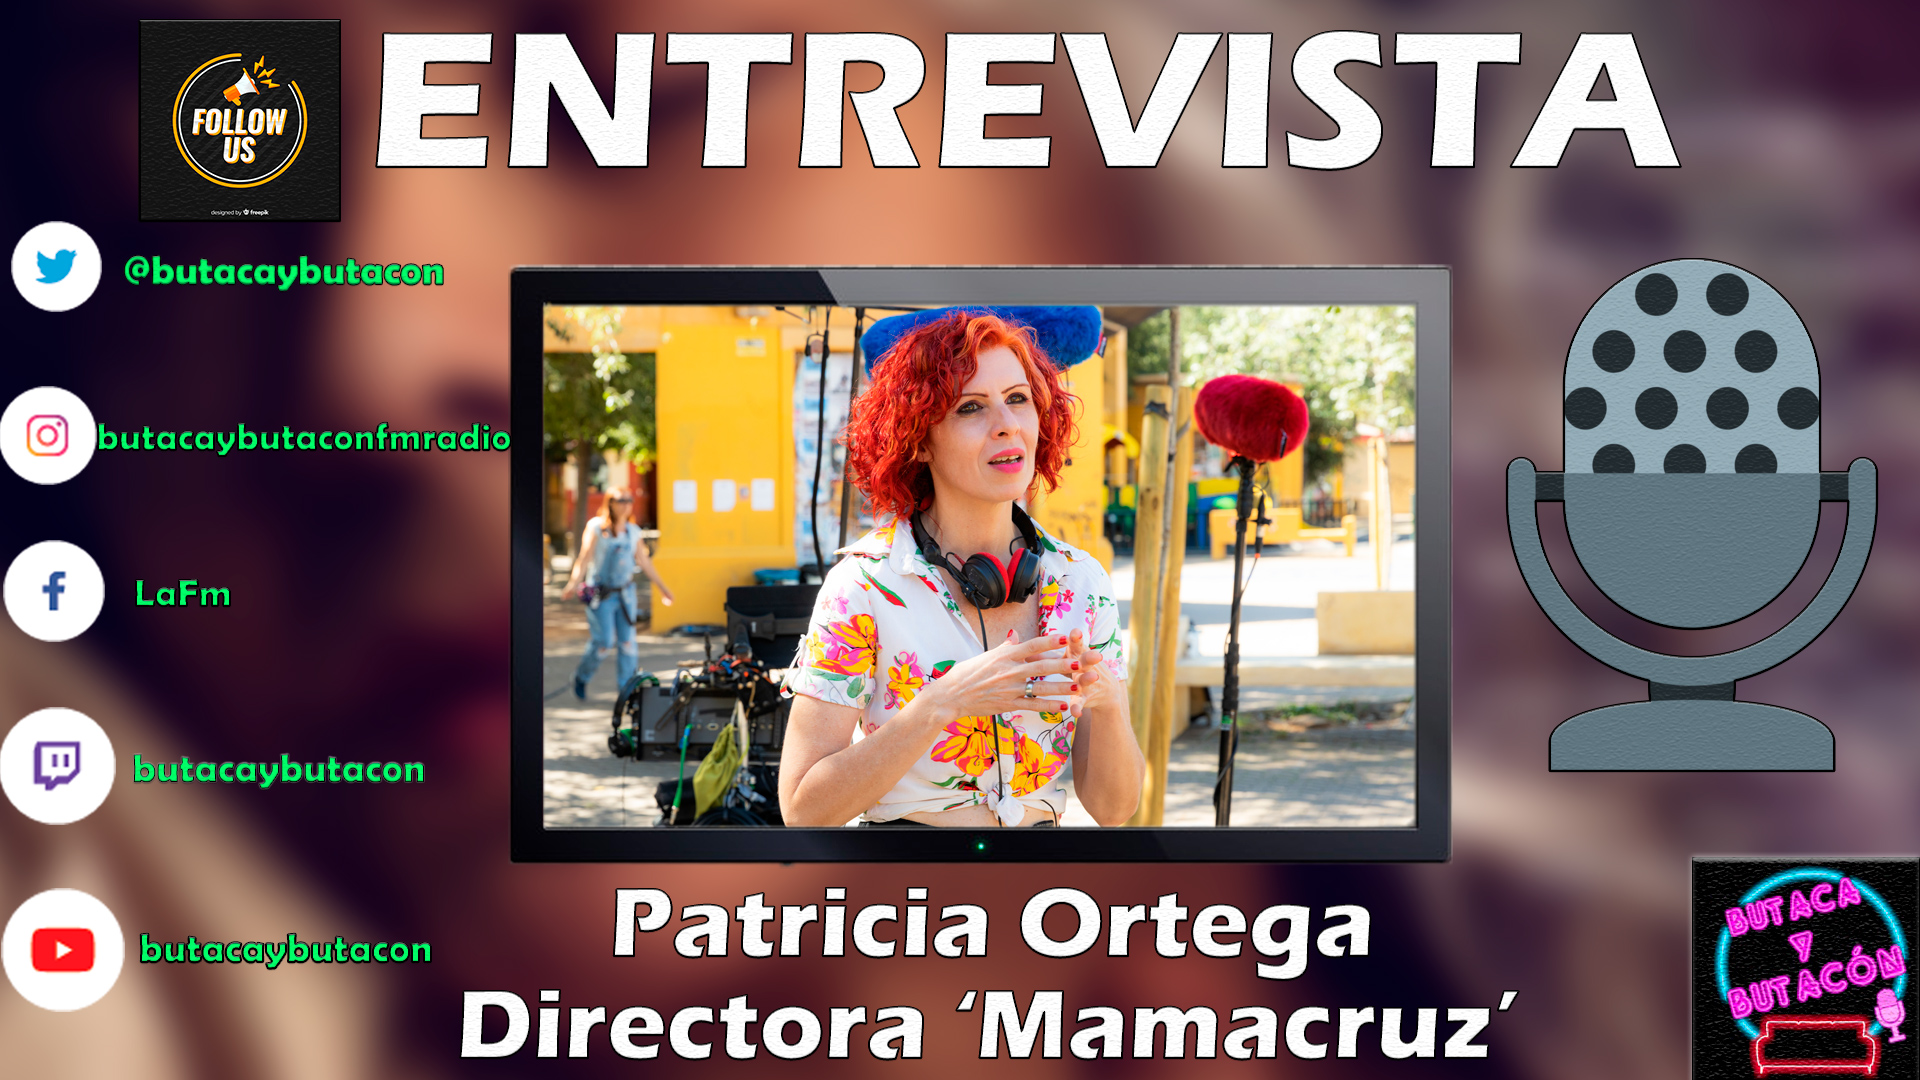 Patricia Ortega: "El deseo es vitalidad y alegría"